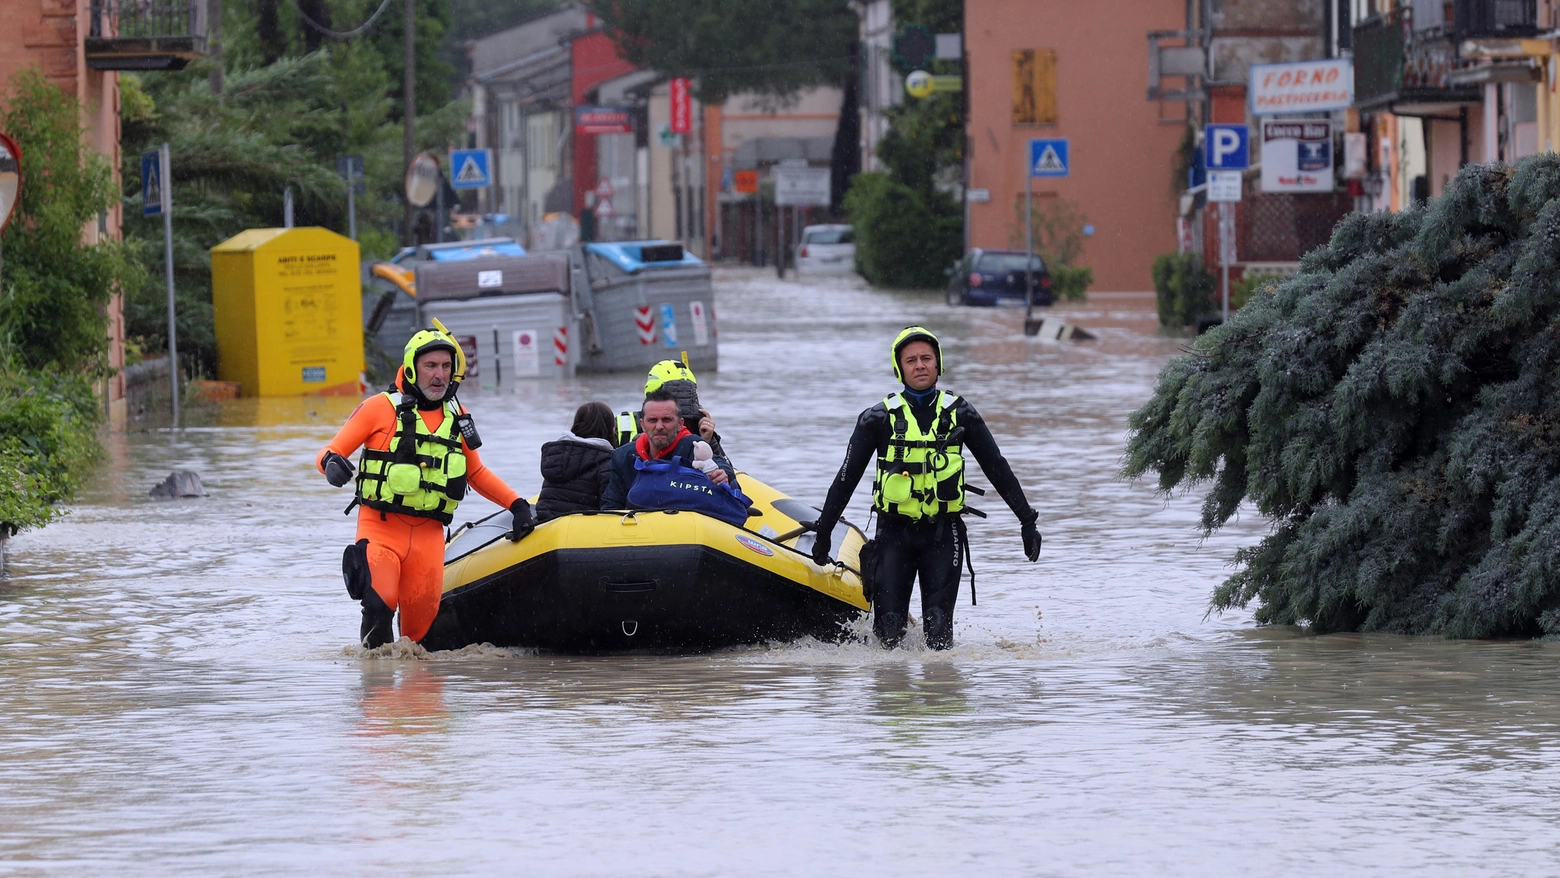 Un'immagine dall'alluvione in Emilia-Romagna